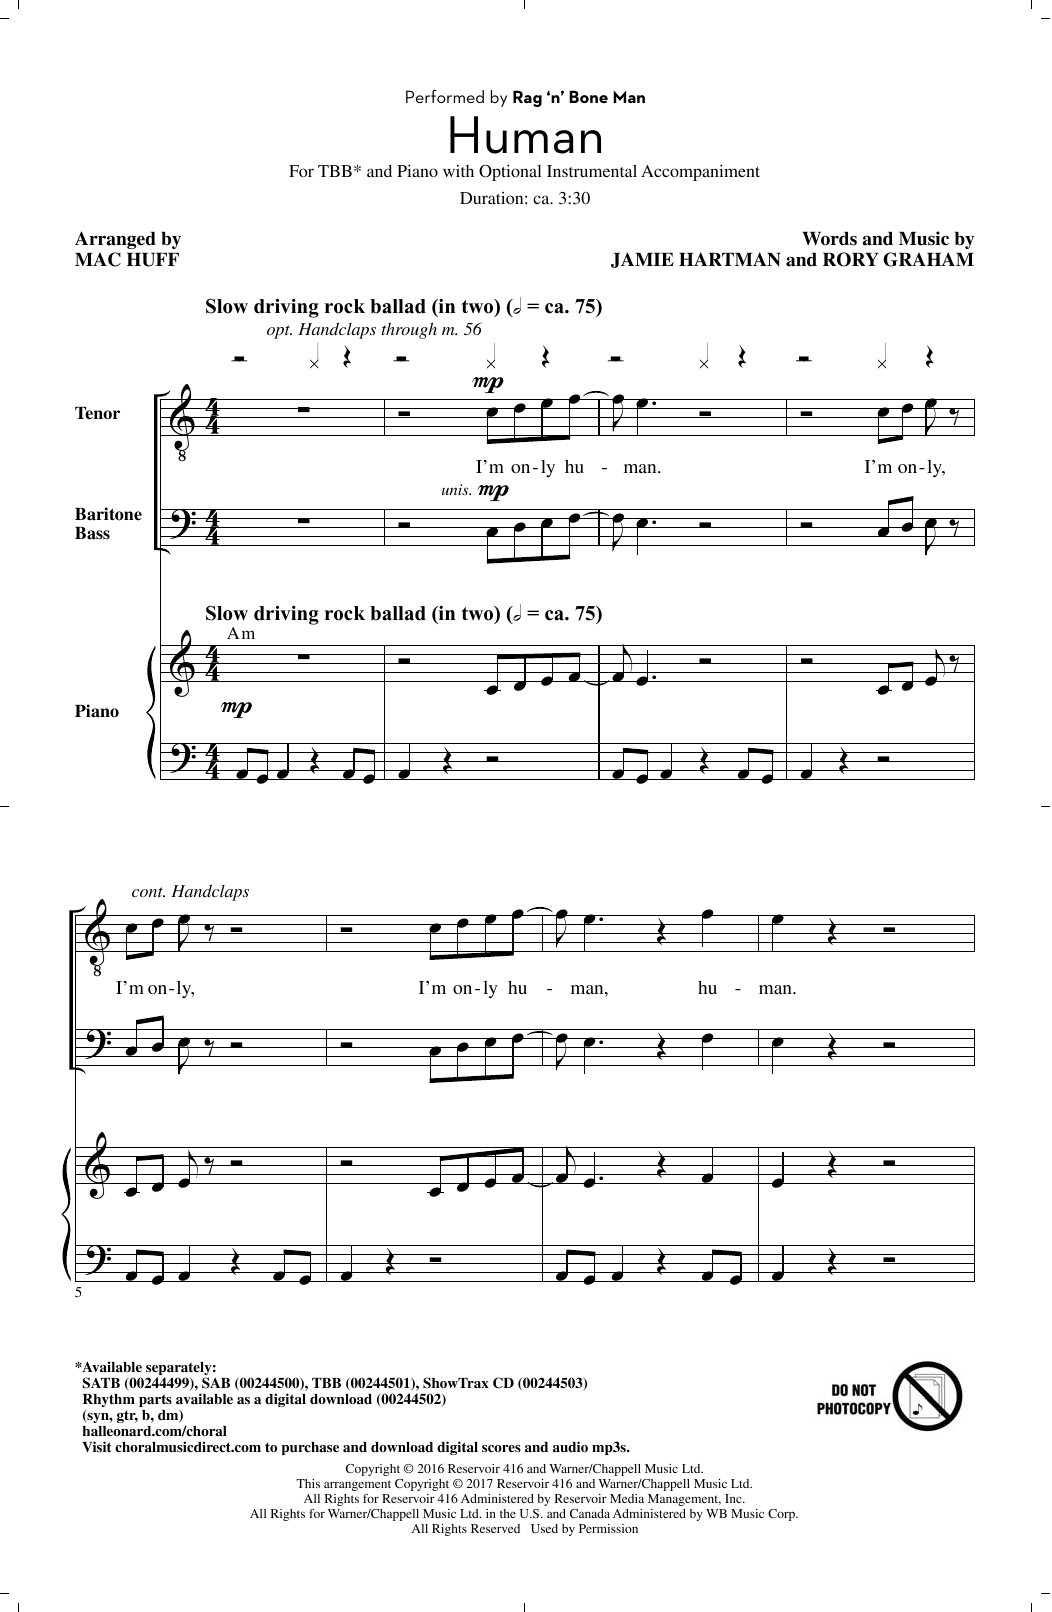 Rag'n'Bone Man Human (arr. Mac Huff) sheet music notes and chords arranged for TBB Choir